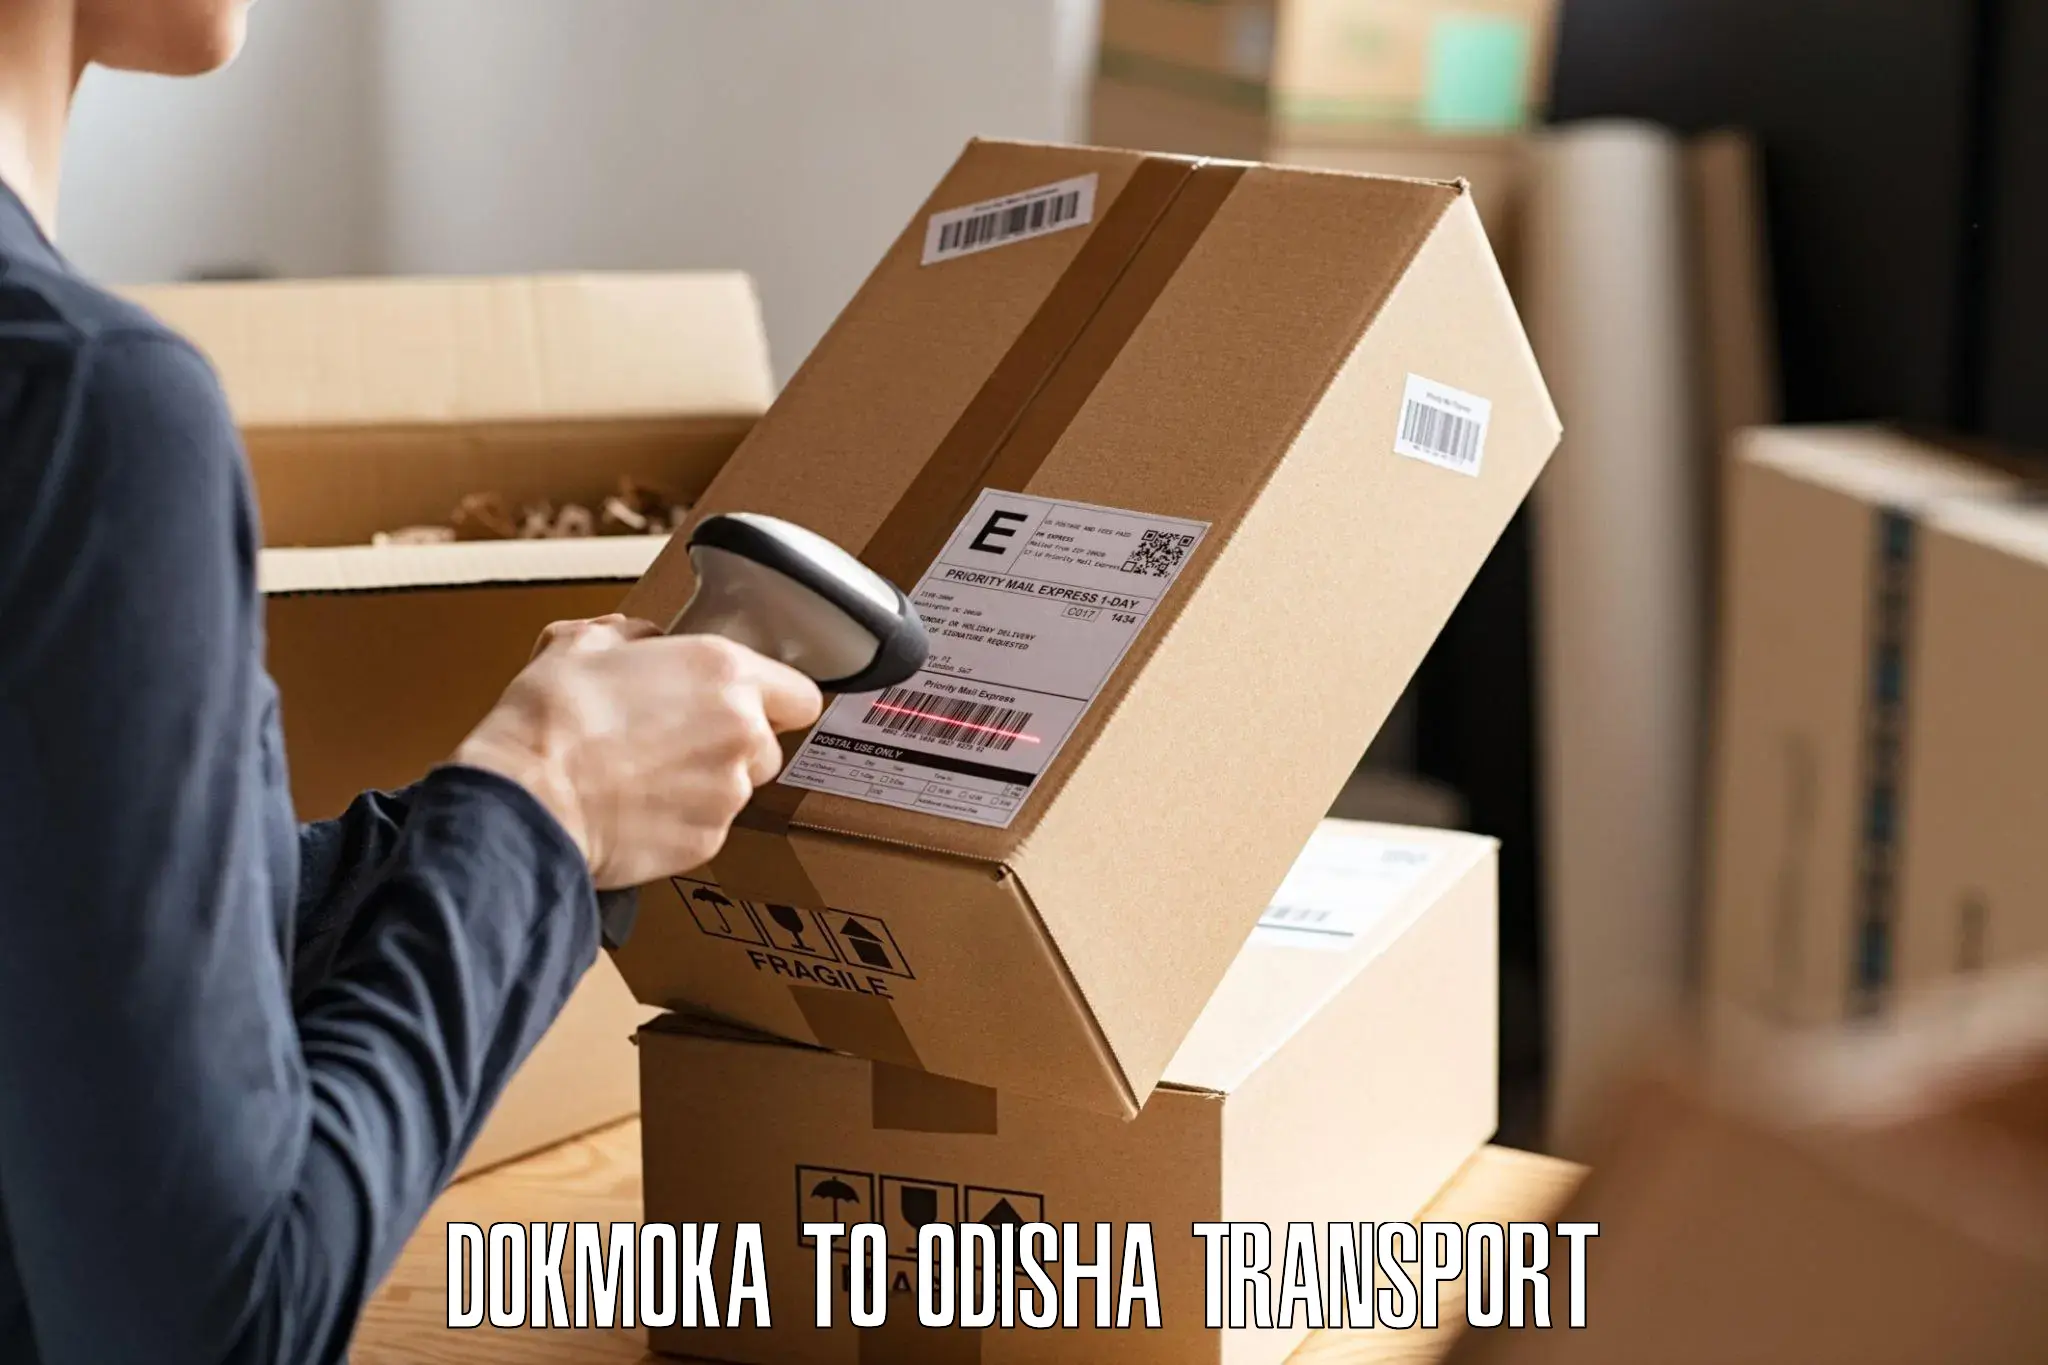 Interstate goods transport Dokmoka to Binka